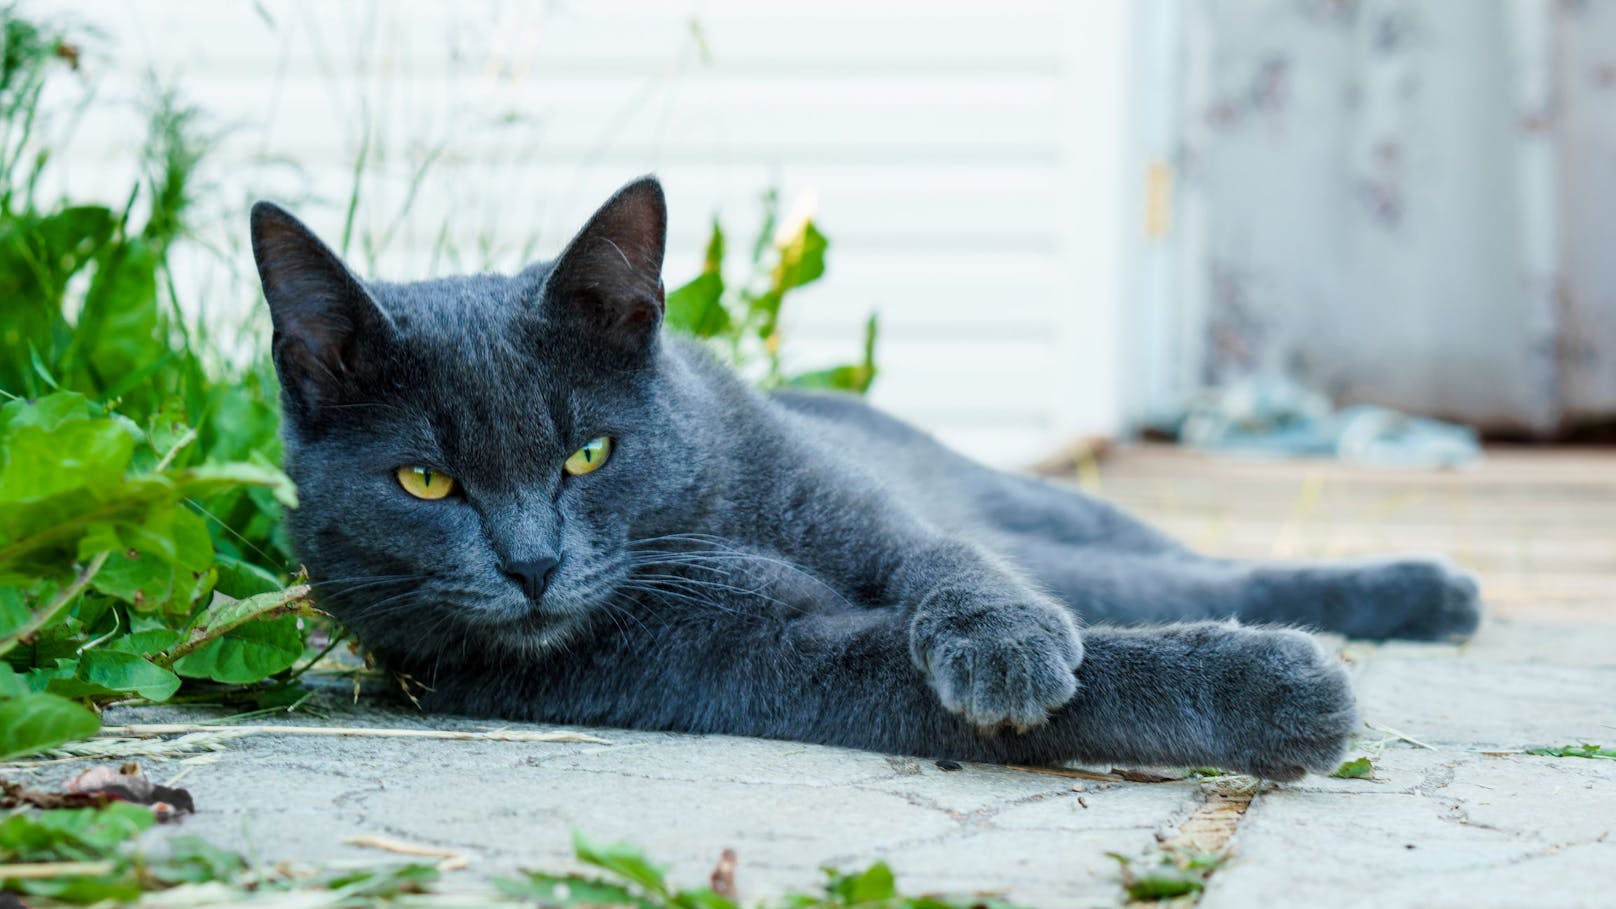 Die "<strong>Russisch blau</strong>" - Katzen gelten als besonders verschmuste und ruhige Katzen. Das blau schimmernde Fell tut sein Übriges. Ein Instagram-Hit! 